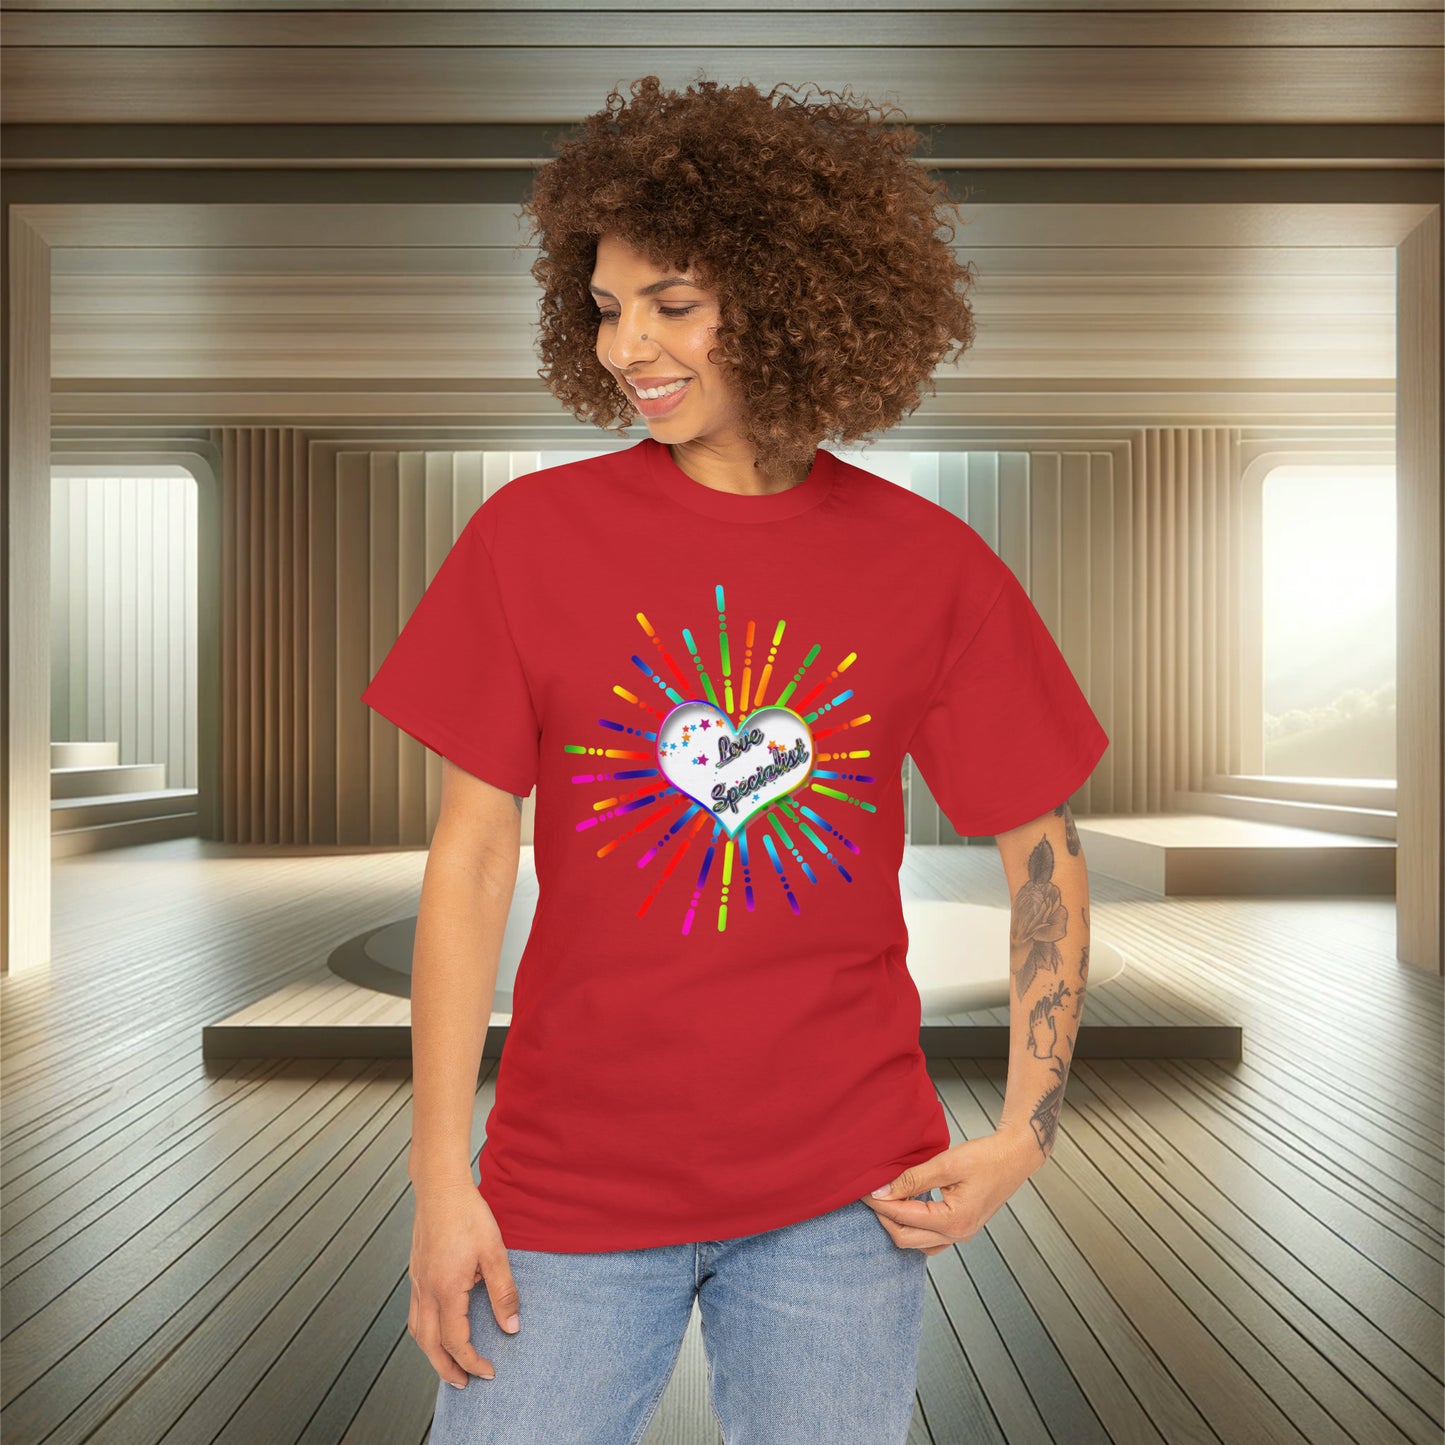 Valentines Day Shirt, Heart and Stars Shirt, Valentines Day Shirts For Women, Cute Heart T-shirt, Cute Valentine Shirt